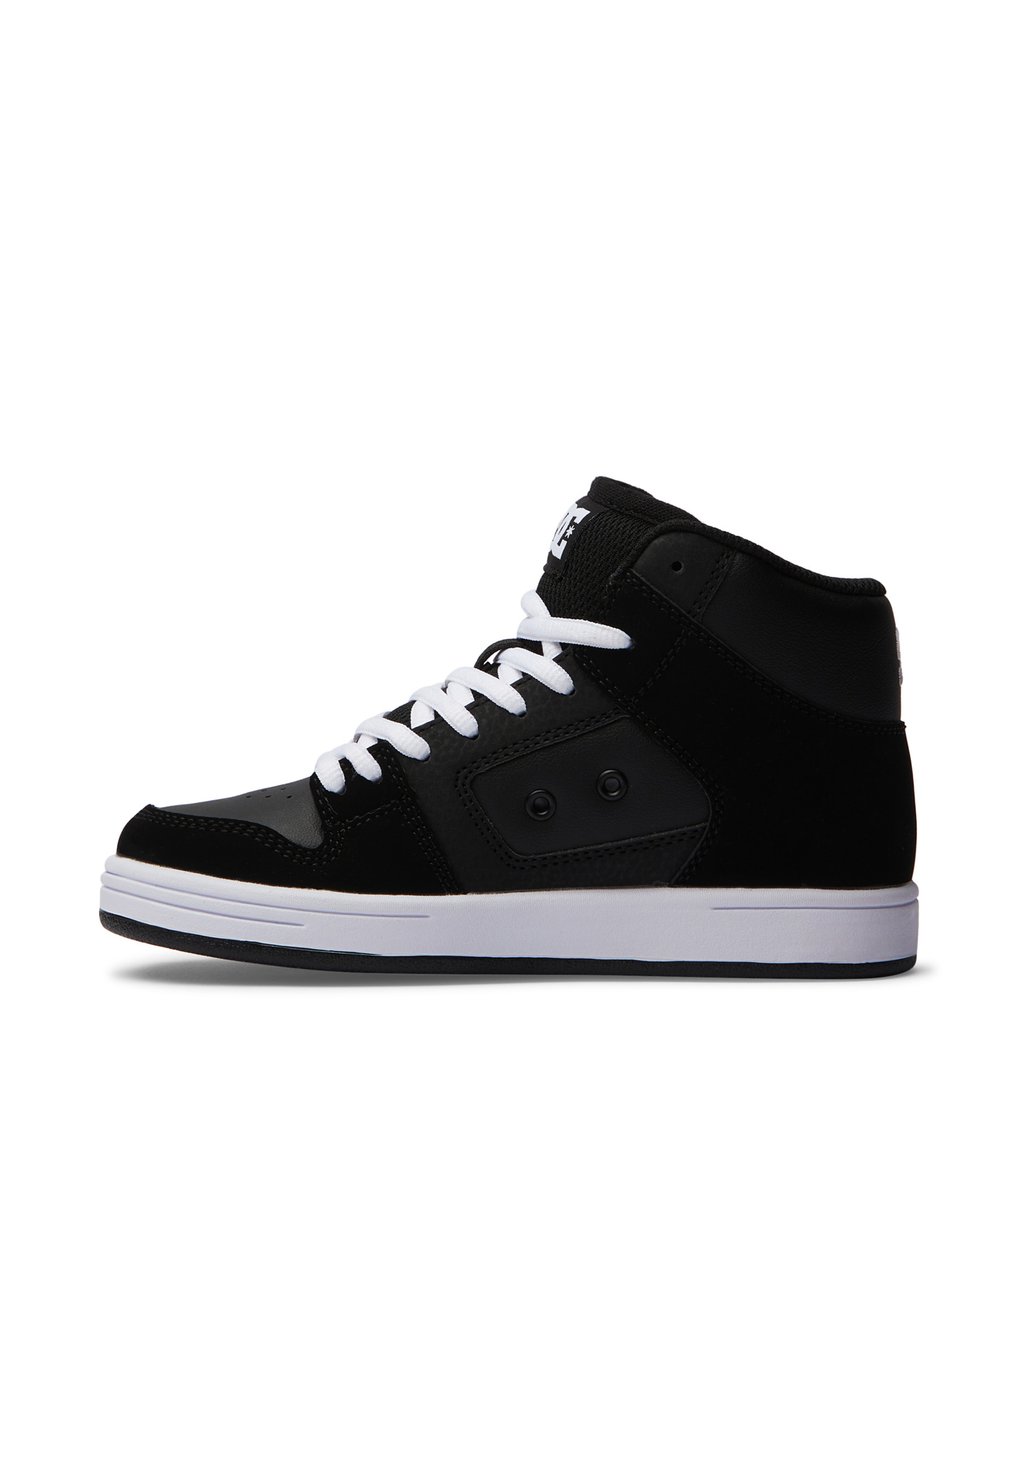 Кроссовки высокие MANTECA 4 HI DC Shoes, цвет black/black/white кроссовки pure dc цвет black black white